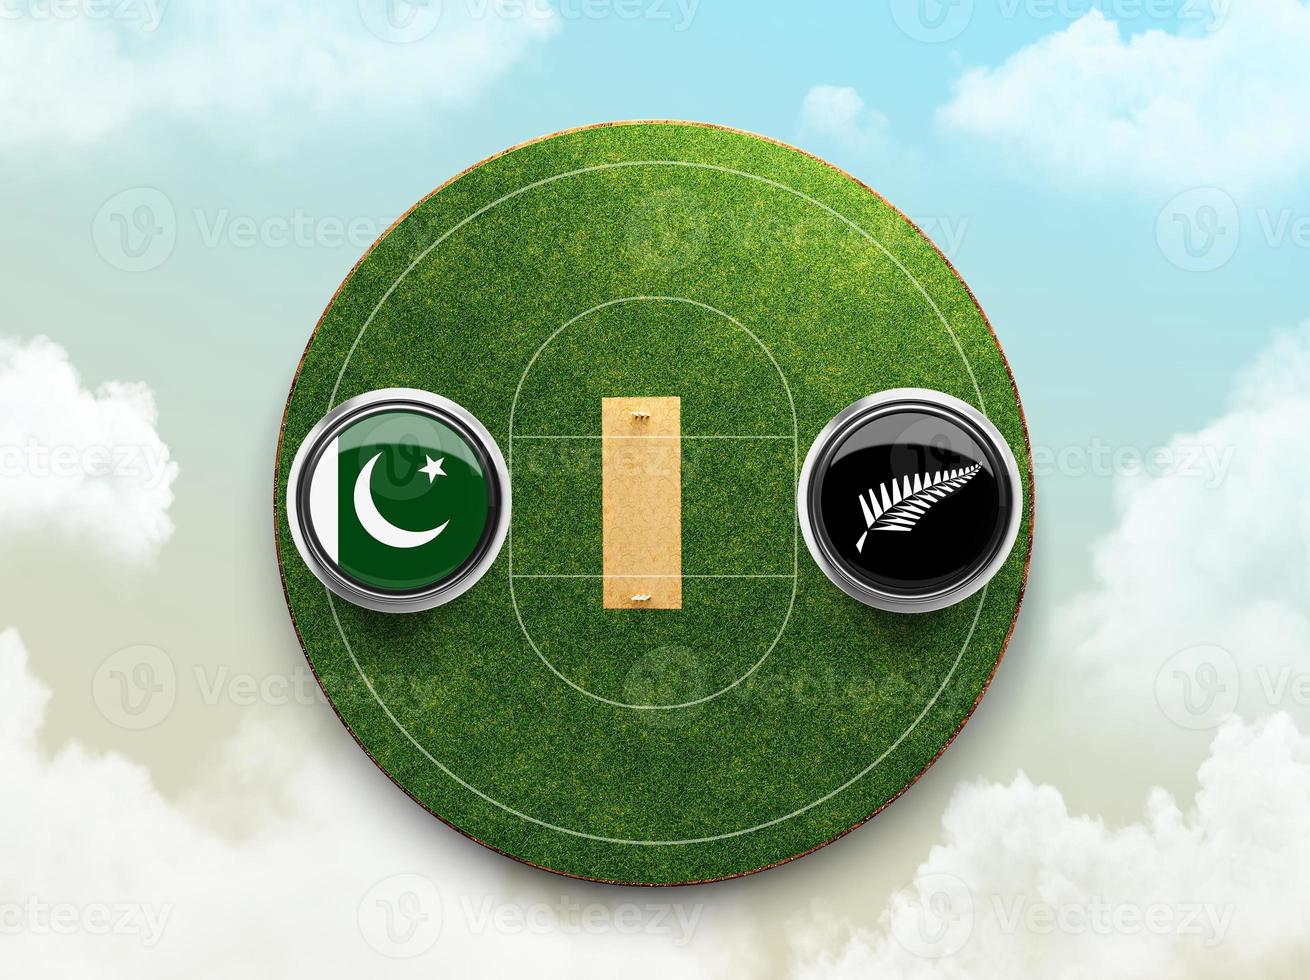 Pakistan vs nieuw Zeeland krekel vlag met knop insigne Aan stadion 3d illustratie foto